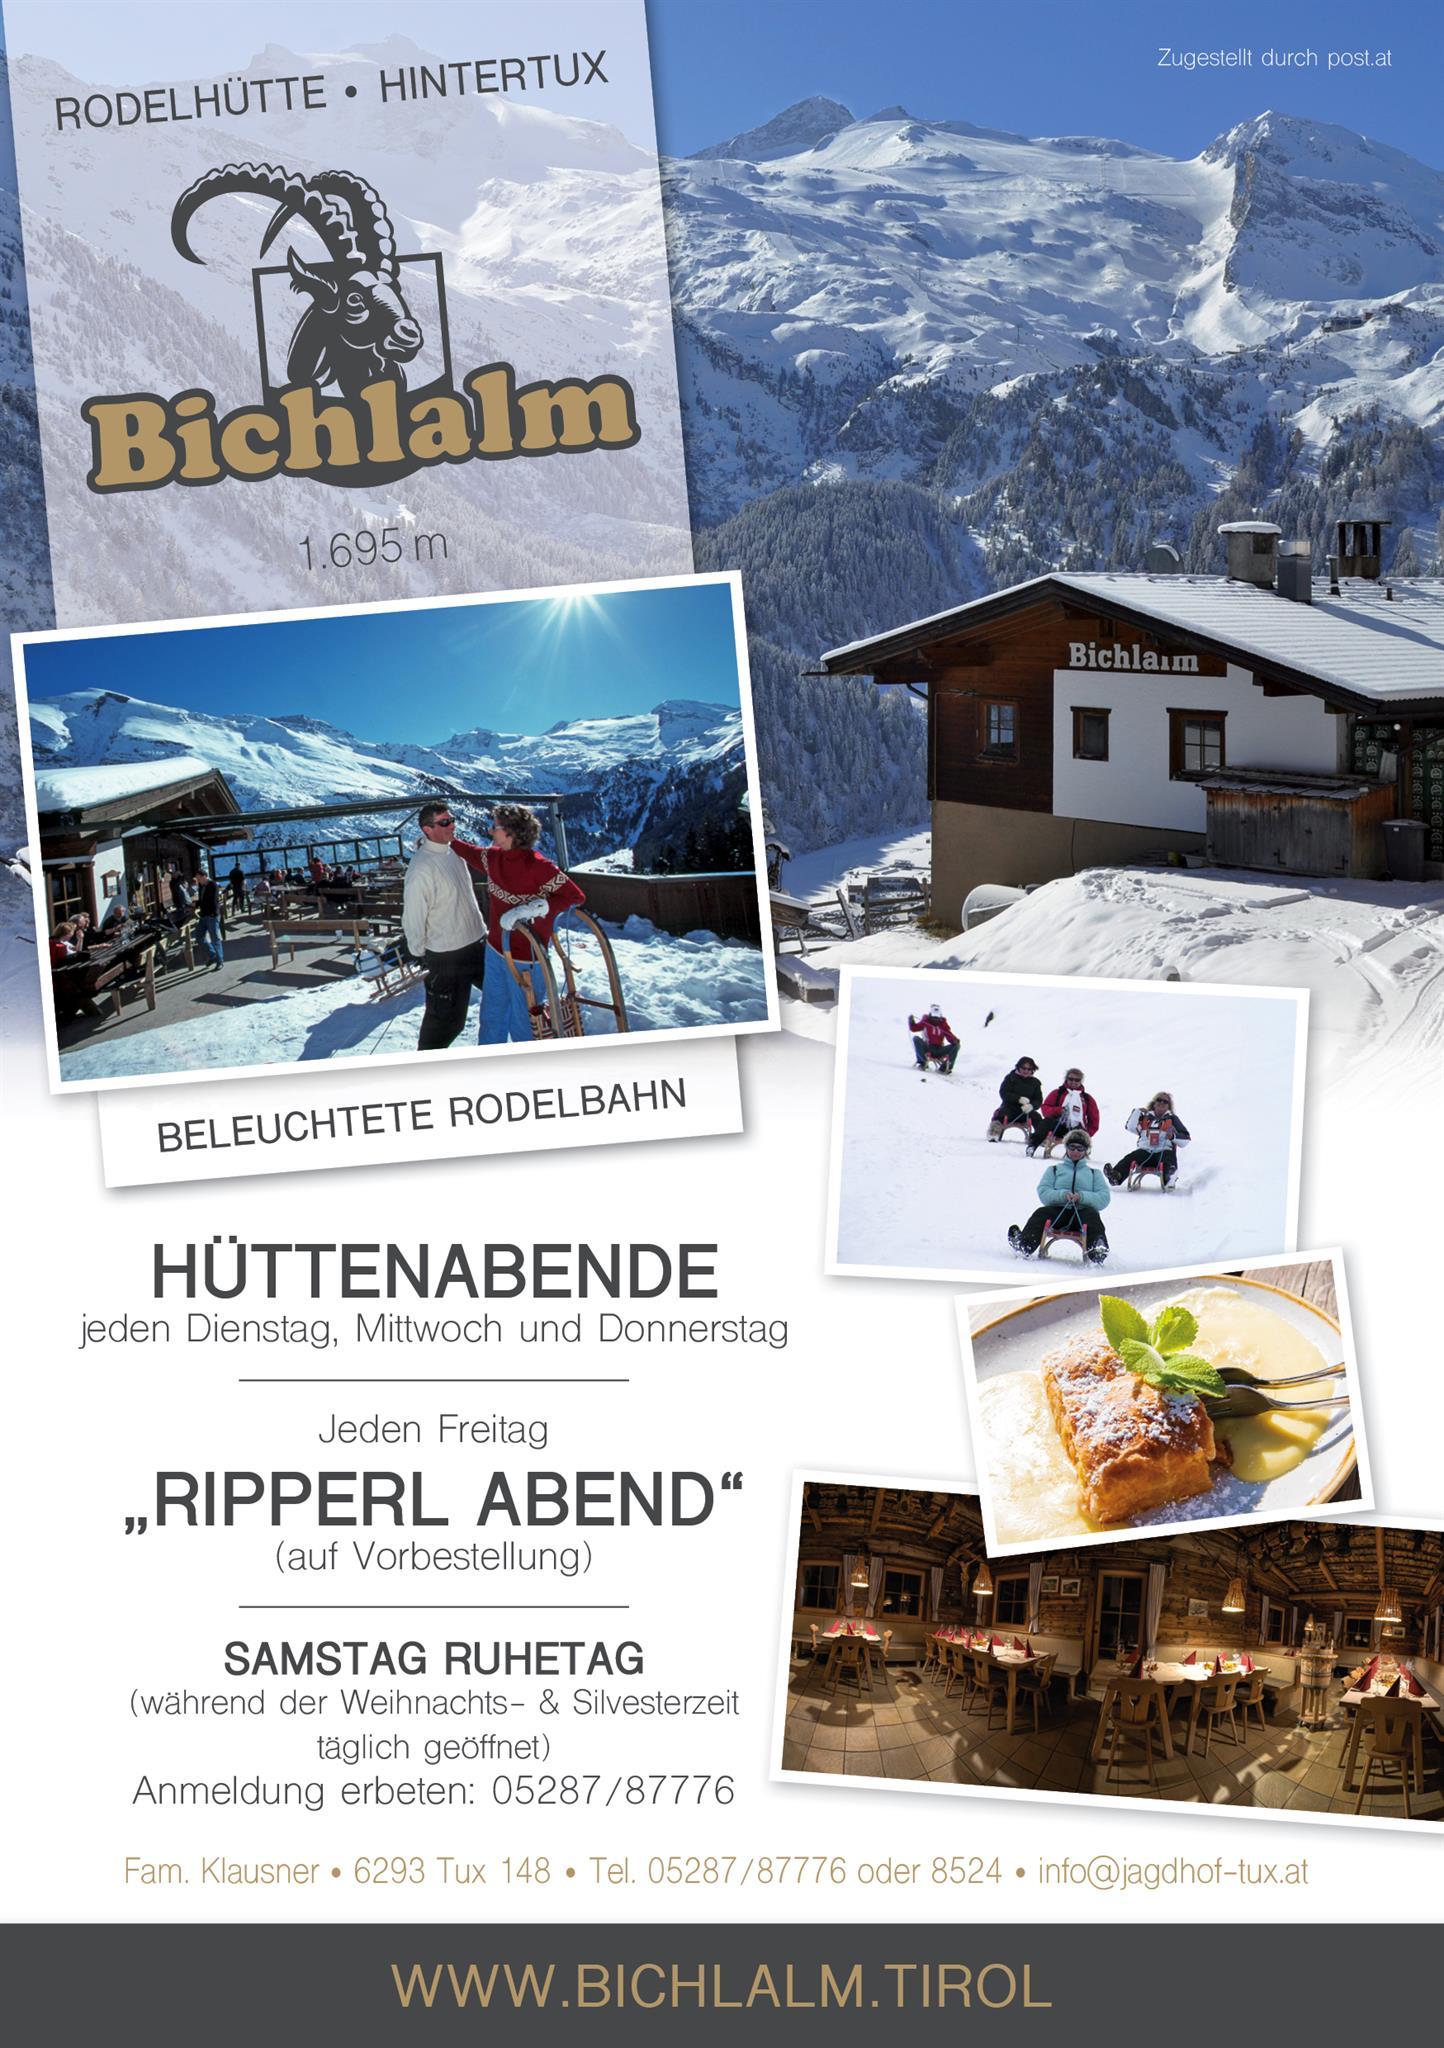 Behufter Besuch: Hirsch bummelt durch Markt in Cortina  Tiroler  Tageszeitung – Aktuelle Nachrichten auf